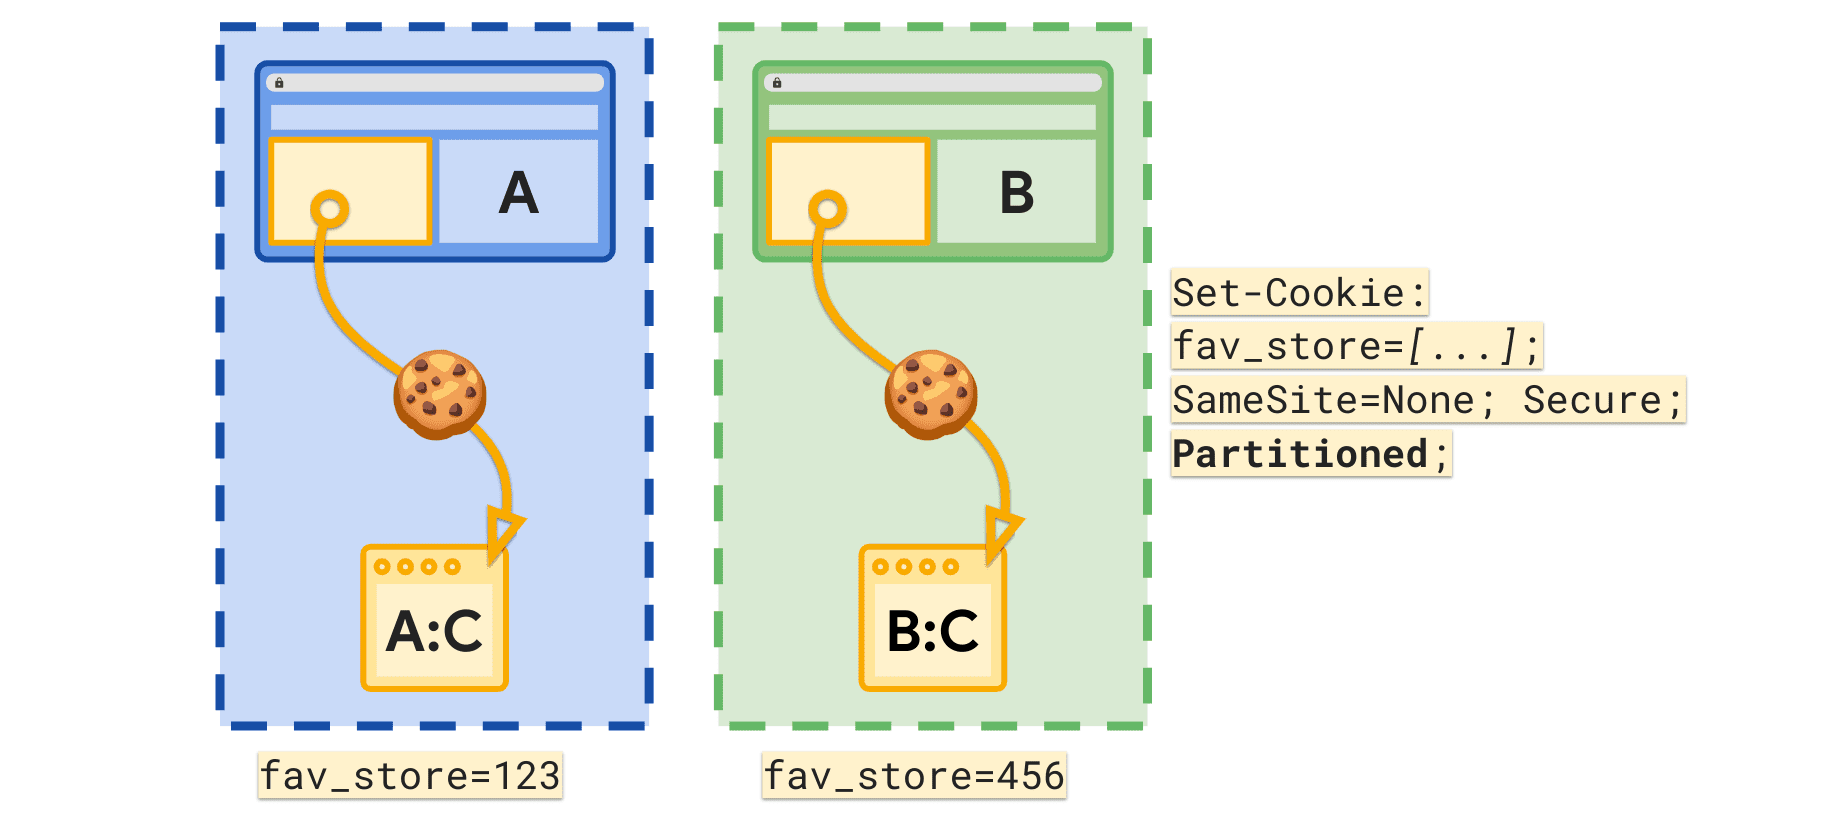 Partitioned 속성을 사용하면 최상위 사이트별로 별도의 fav_store 쿠키를 설정할 수 있습니다.